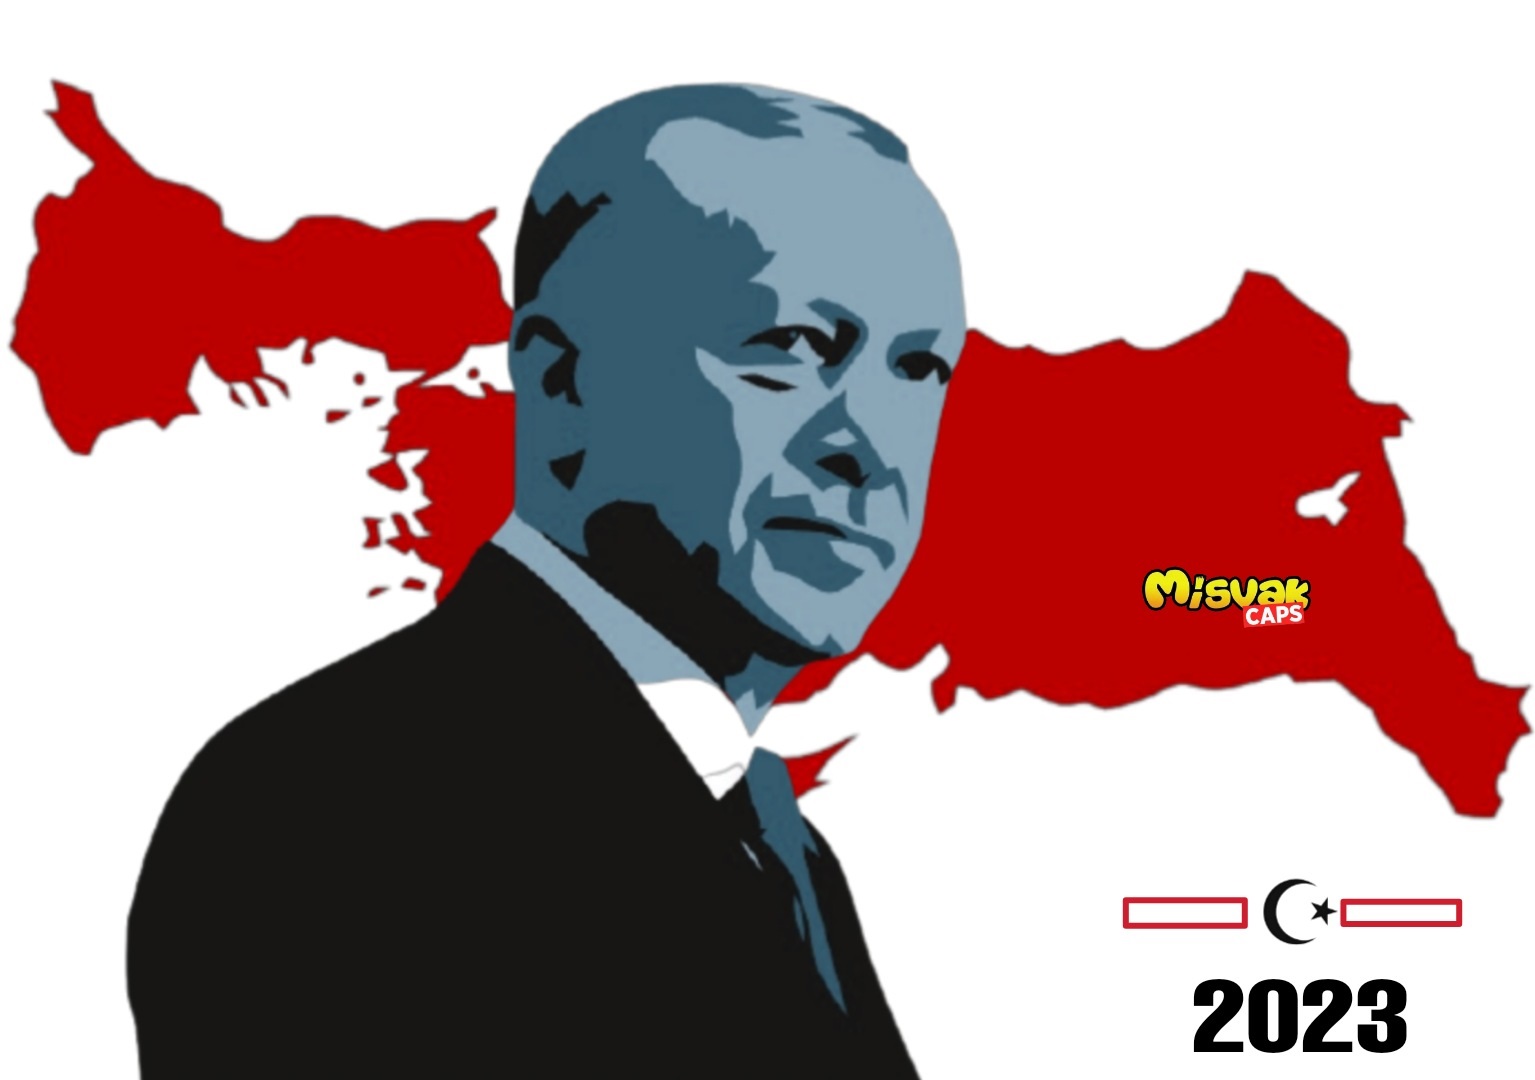 Τι ετοιμάζουν οι Τούρκοι; Κυκλοφόρησαν χάρτη που δείχνει τη μισή Ελλάδα υπό  τουρκική κατοχή το 2023!